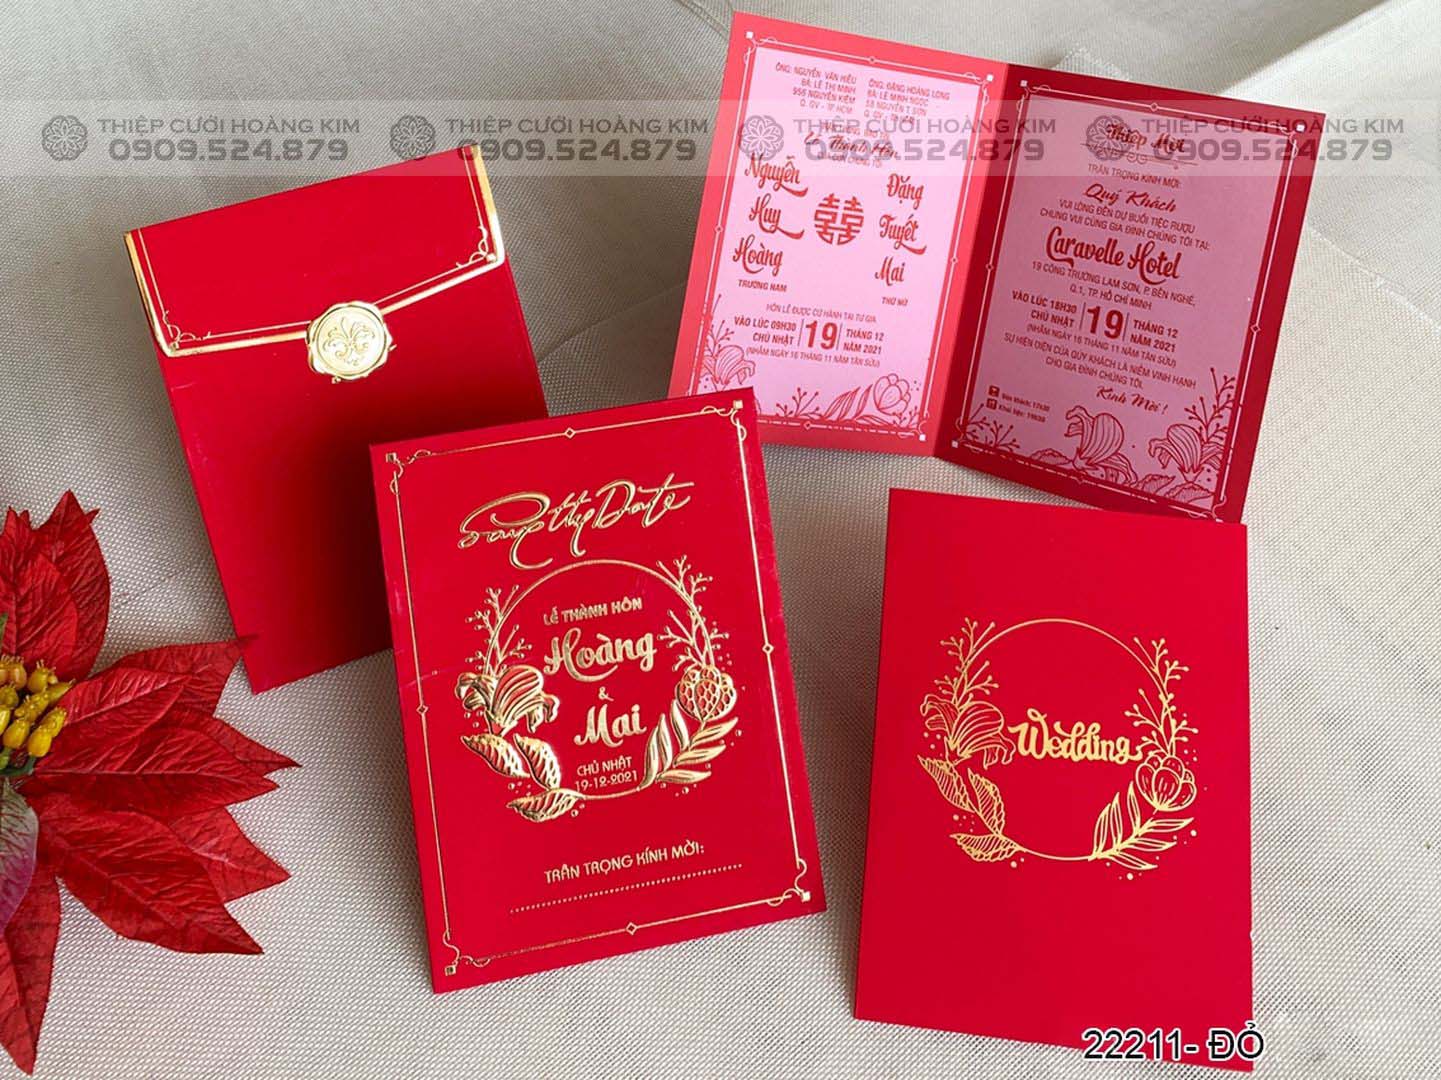 Thiệp cưới IKH-2211 đỏ nhung - Thiệp Cưới Hoàng Kim - 0909524879